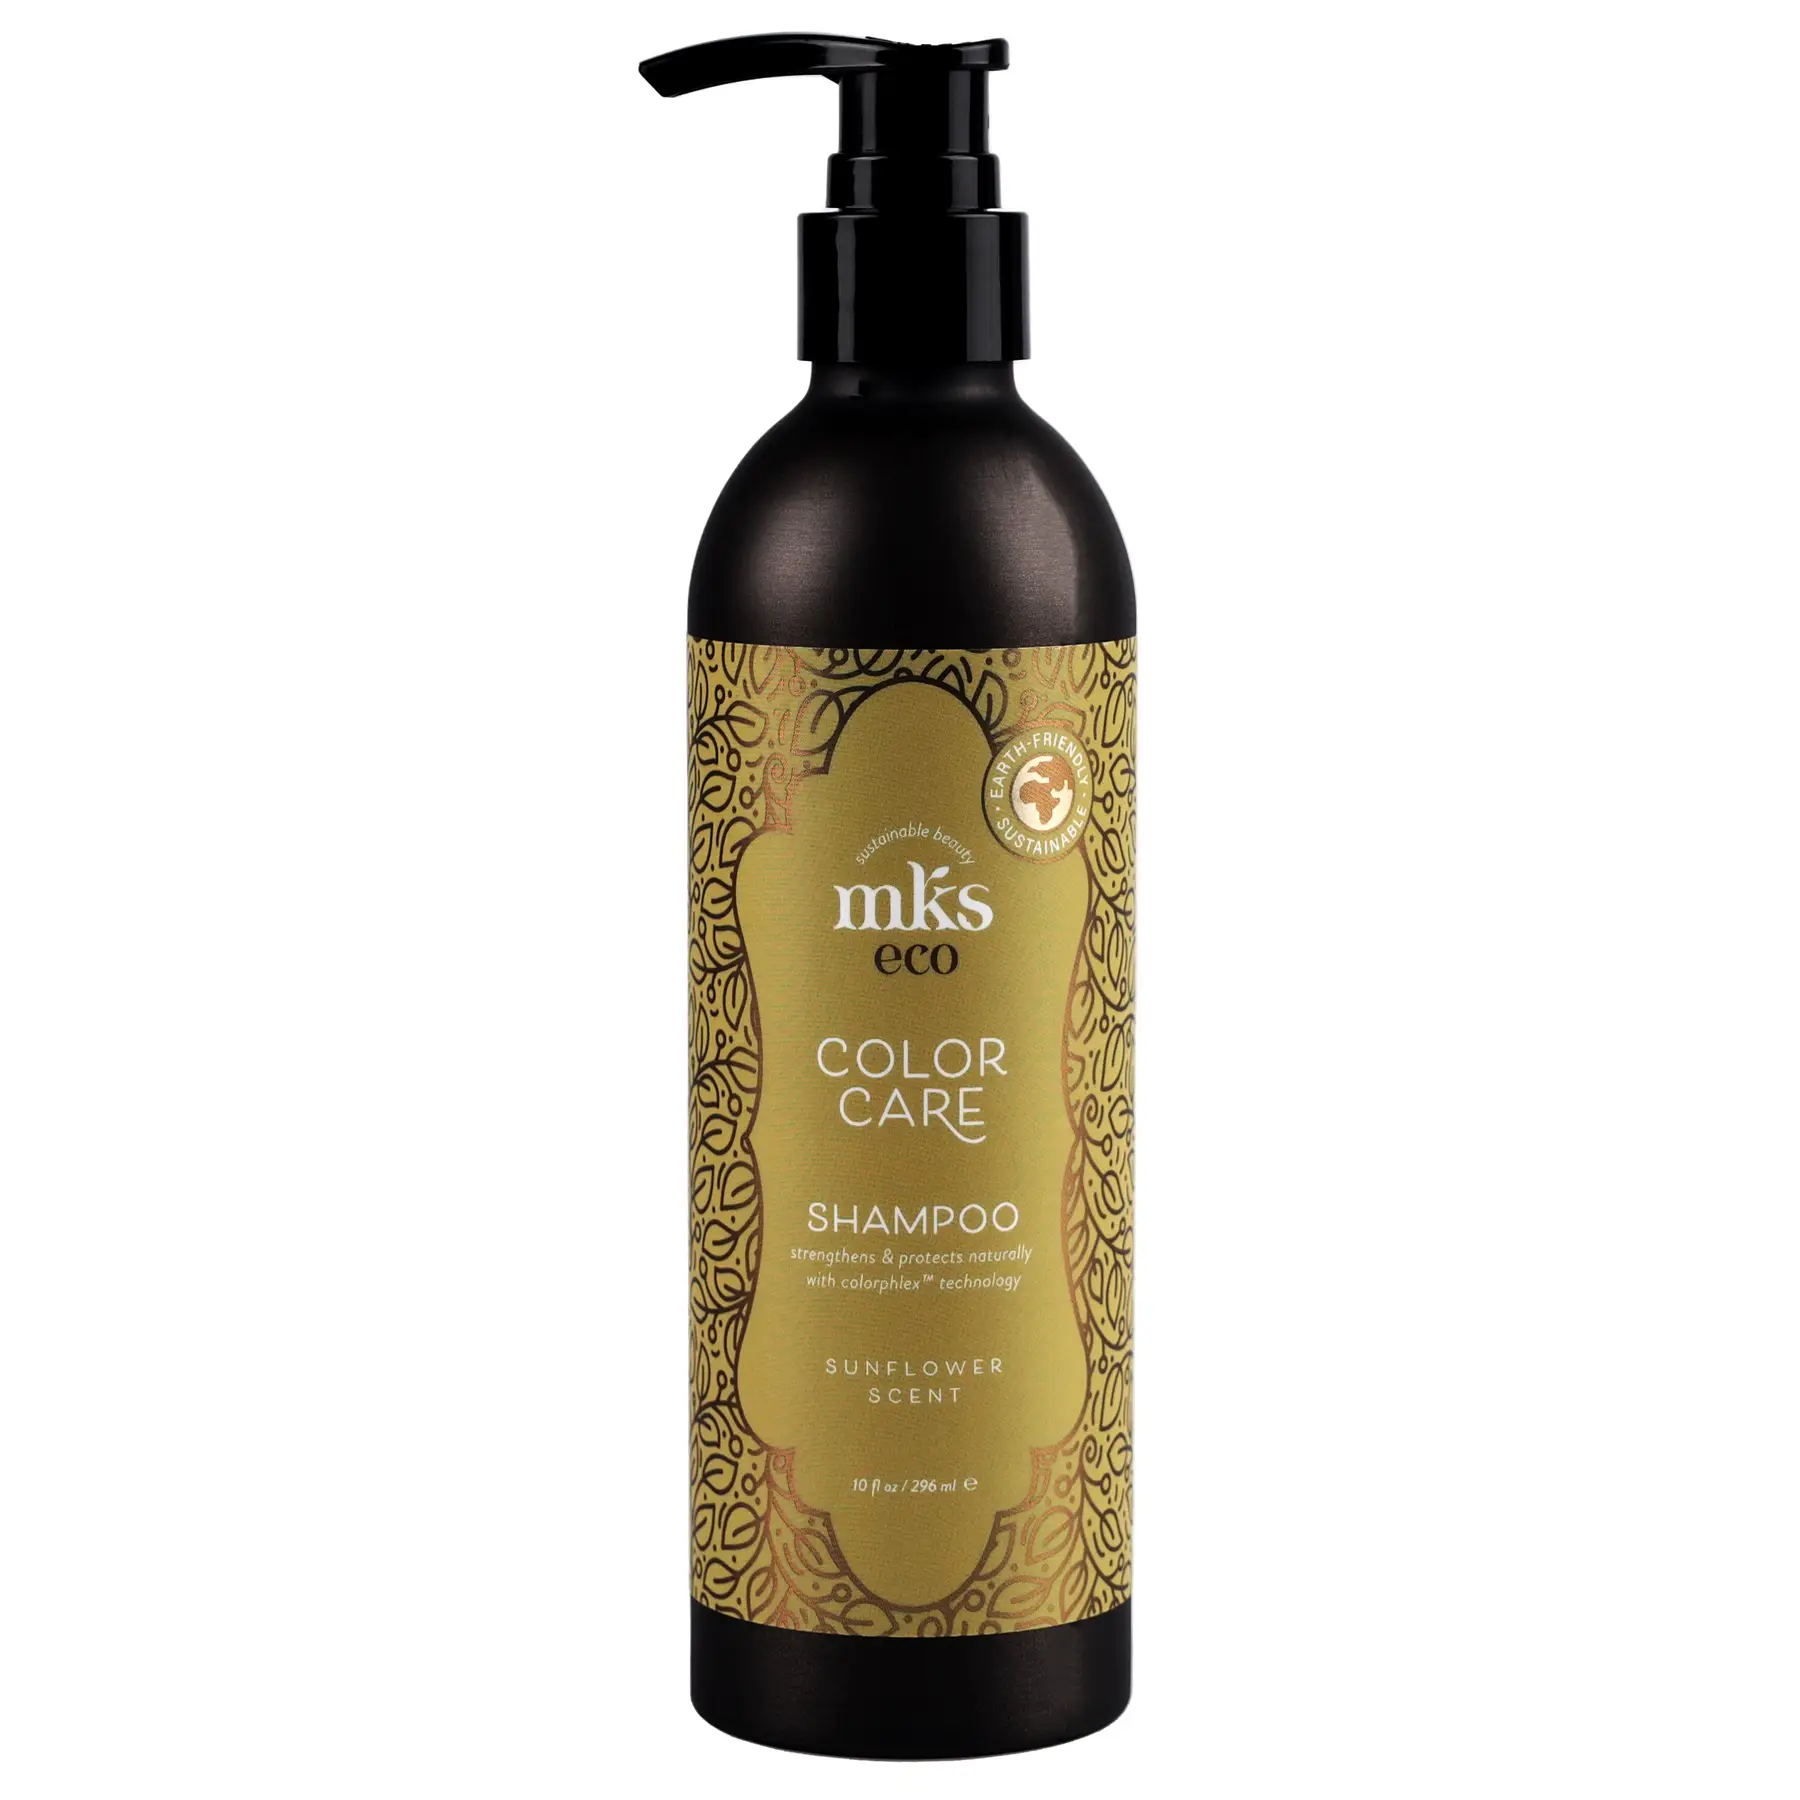 Шампунь для фарбованого волосся MKS-ECO Color Care Shampoo Sunflower Scent 296 мл — фото №1